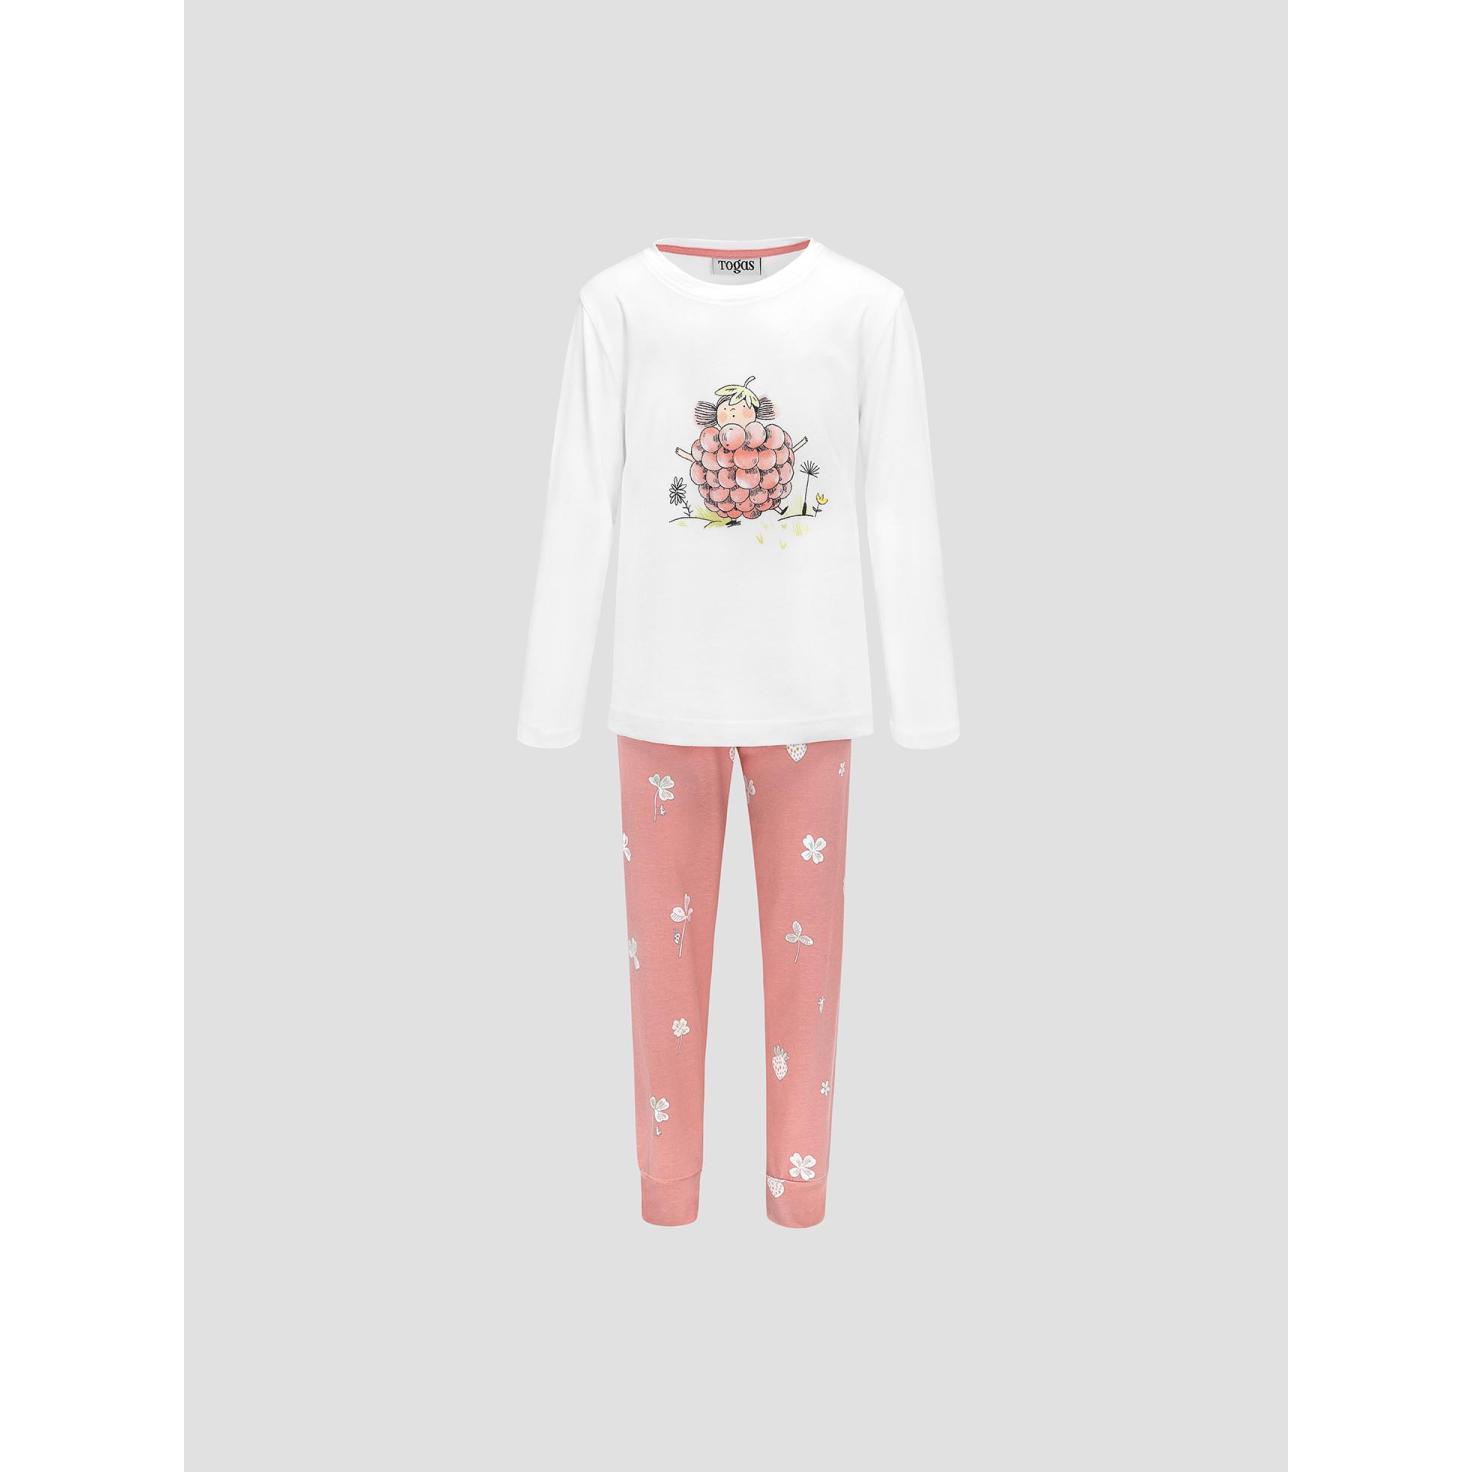 Пижама для девочек Kids by togas Стробби бело-розовый 116-122 см жен пижама с брюками аврора желтый р 50